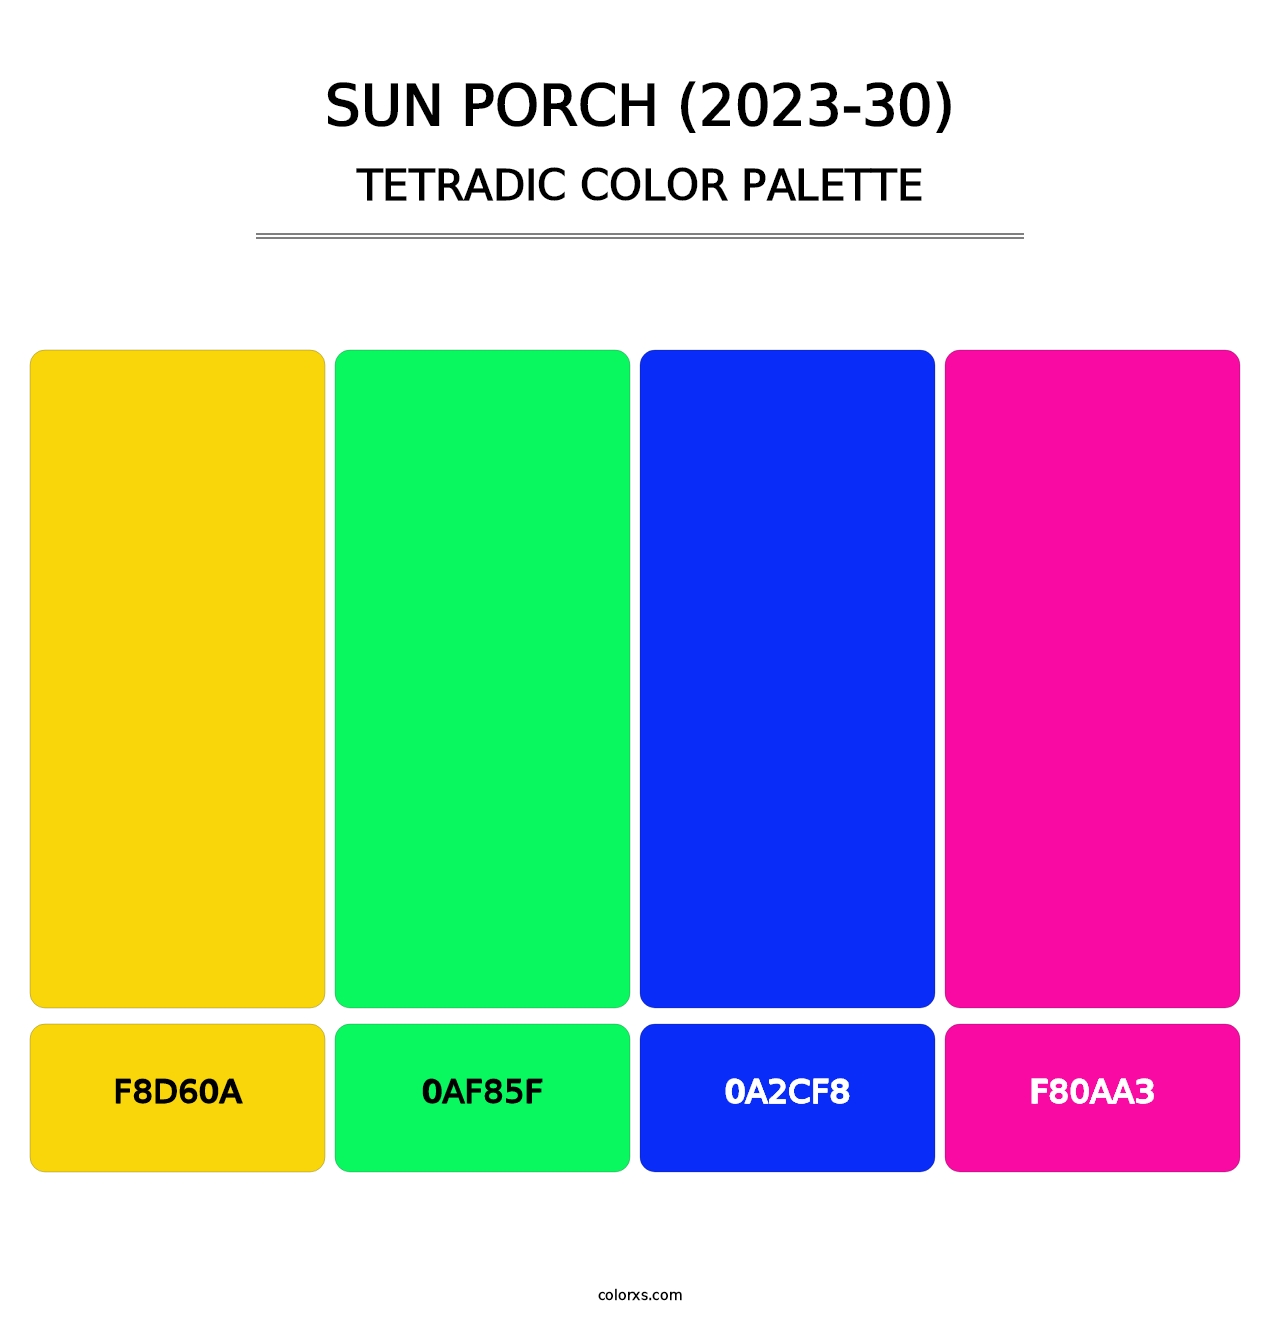 Sun Porch (2023-30) - Tetradic Color Palette